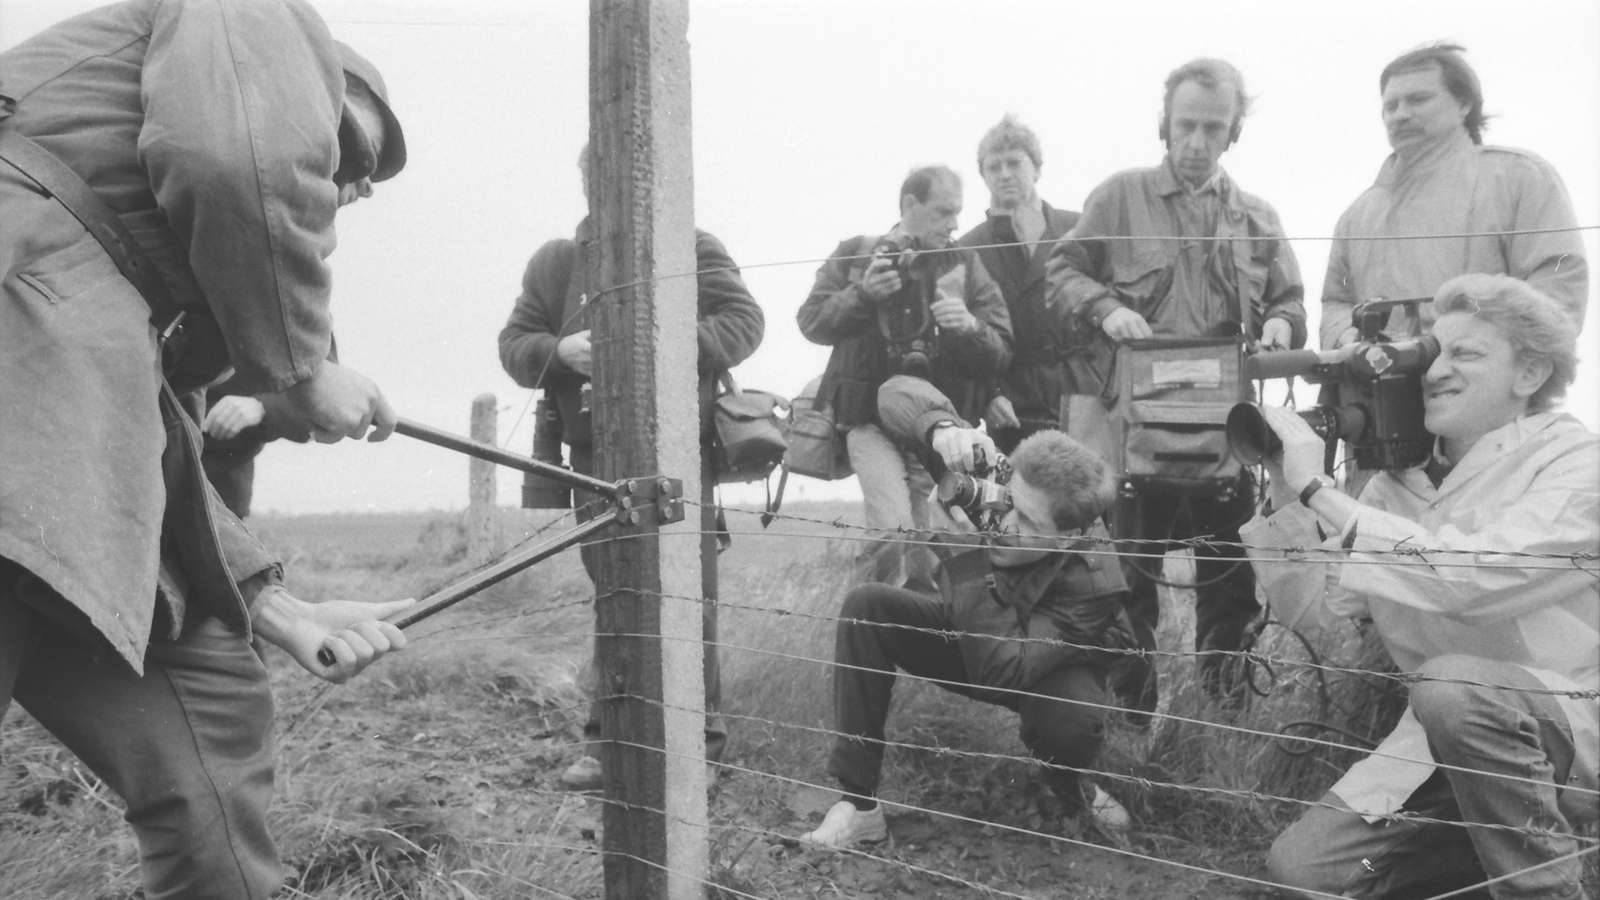 33 anni fa oggi, l'Ungheria fece il primo buco nella cortina di ferro - FOTO 99